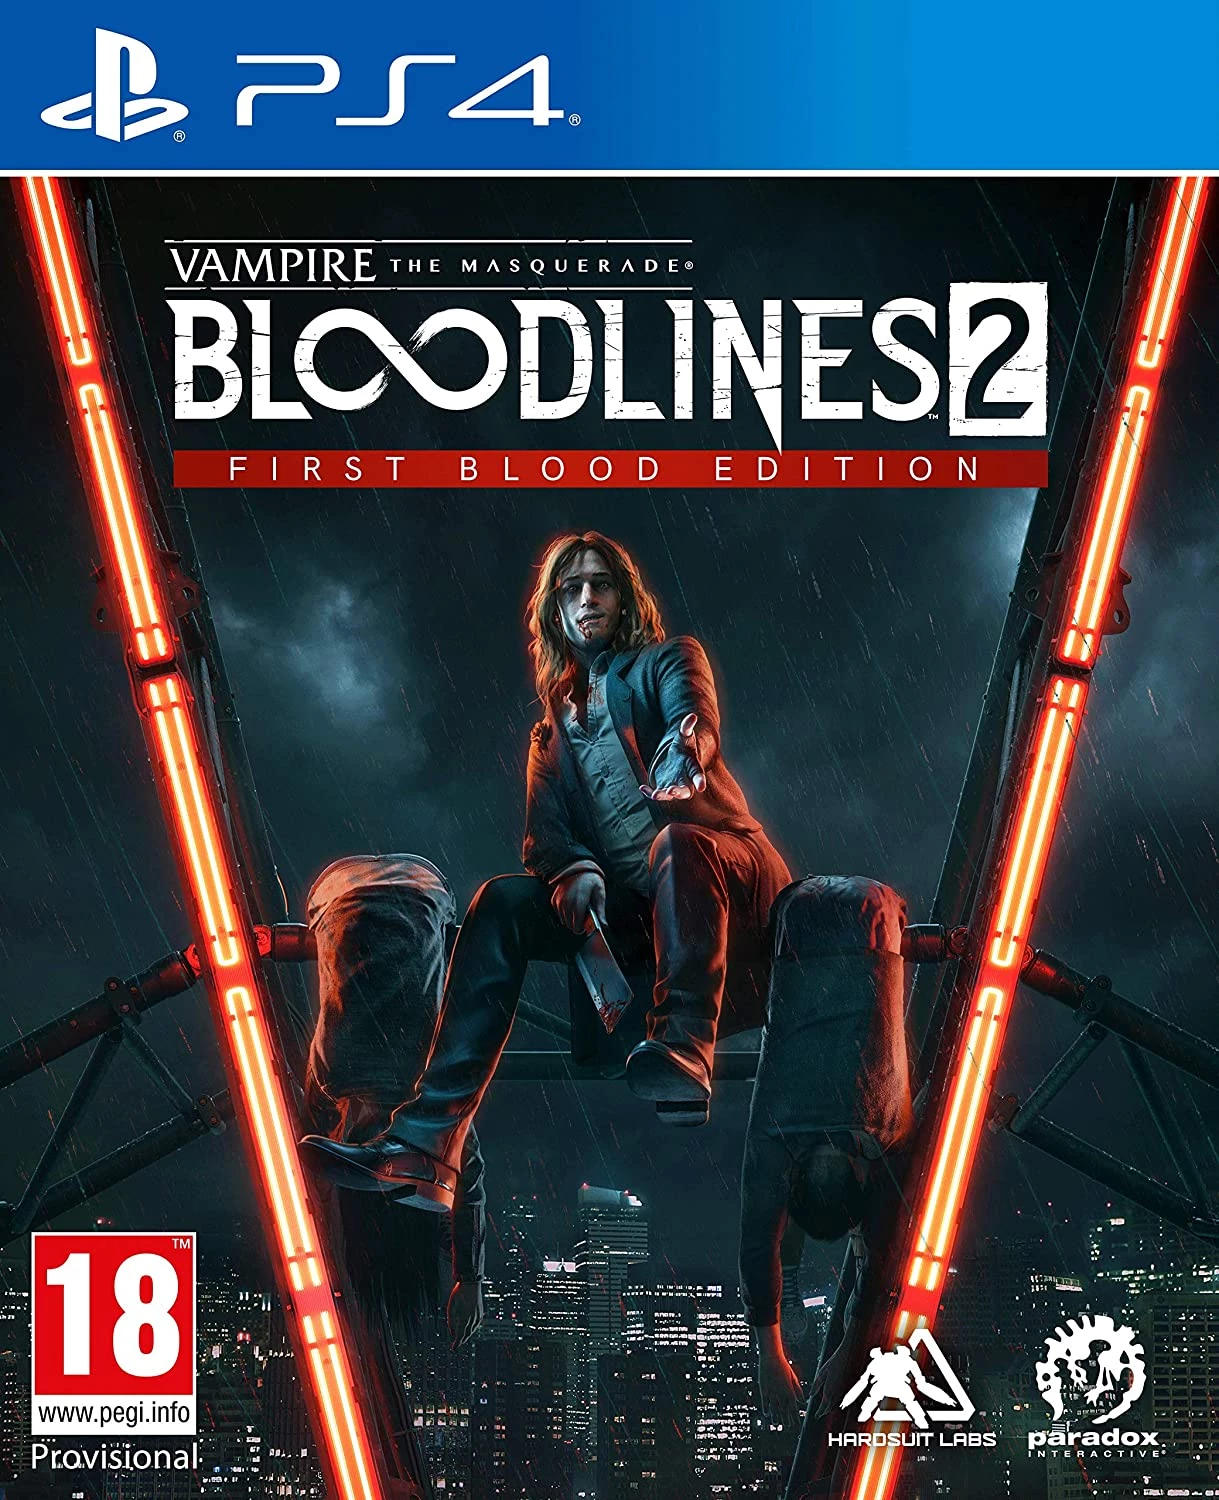 Vampire the Masquerade Bloodlines 2 First Blood Edition voor de PlayStation 4 preorder plaatsen op nedgame.nl